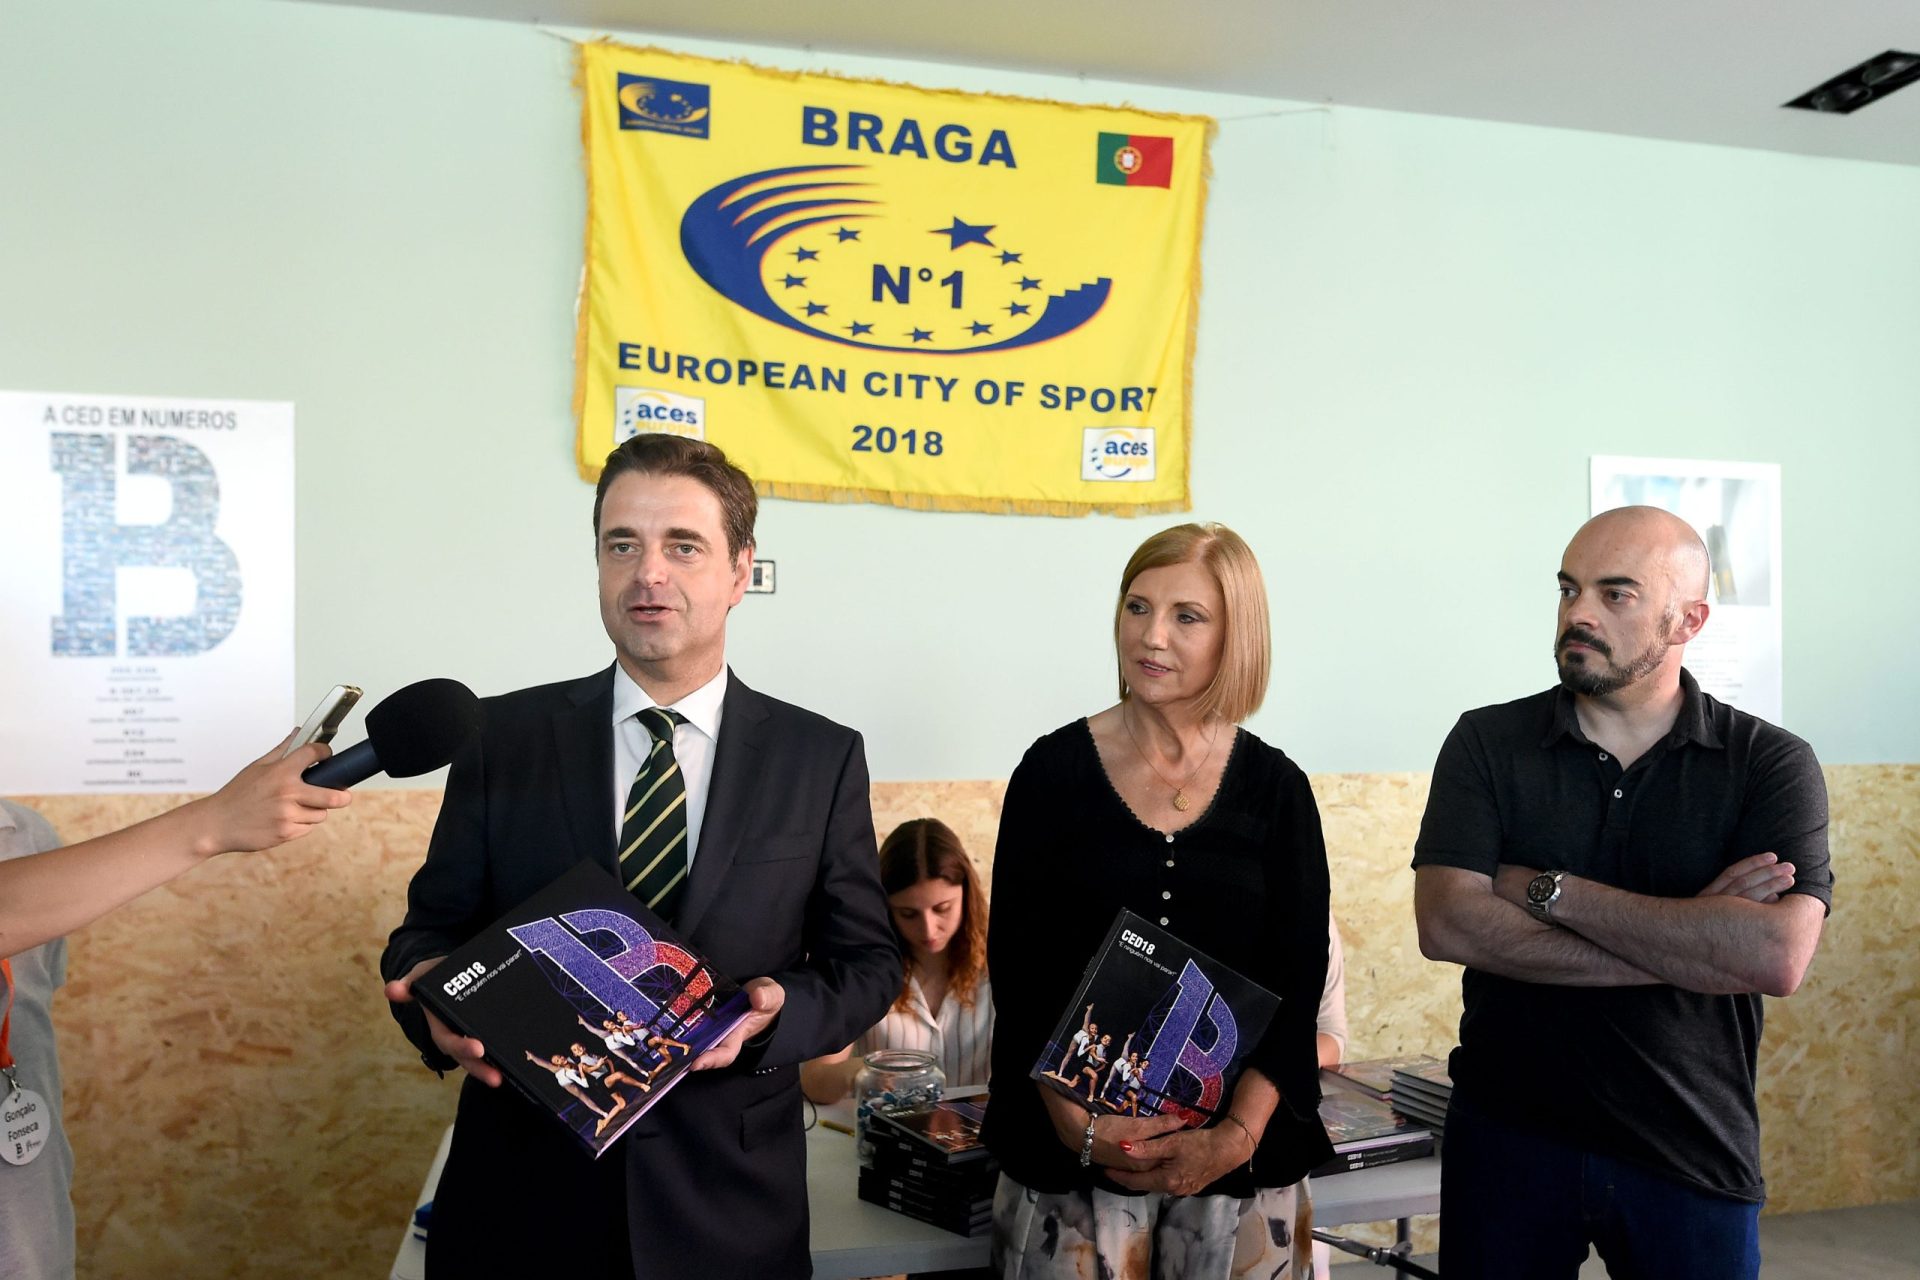 Livro retrata Braga Cidade Europeia do Desporto